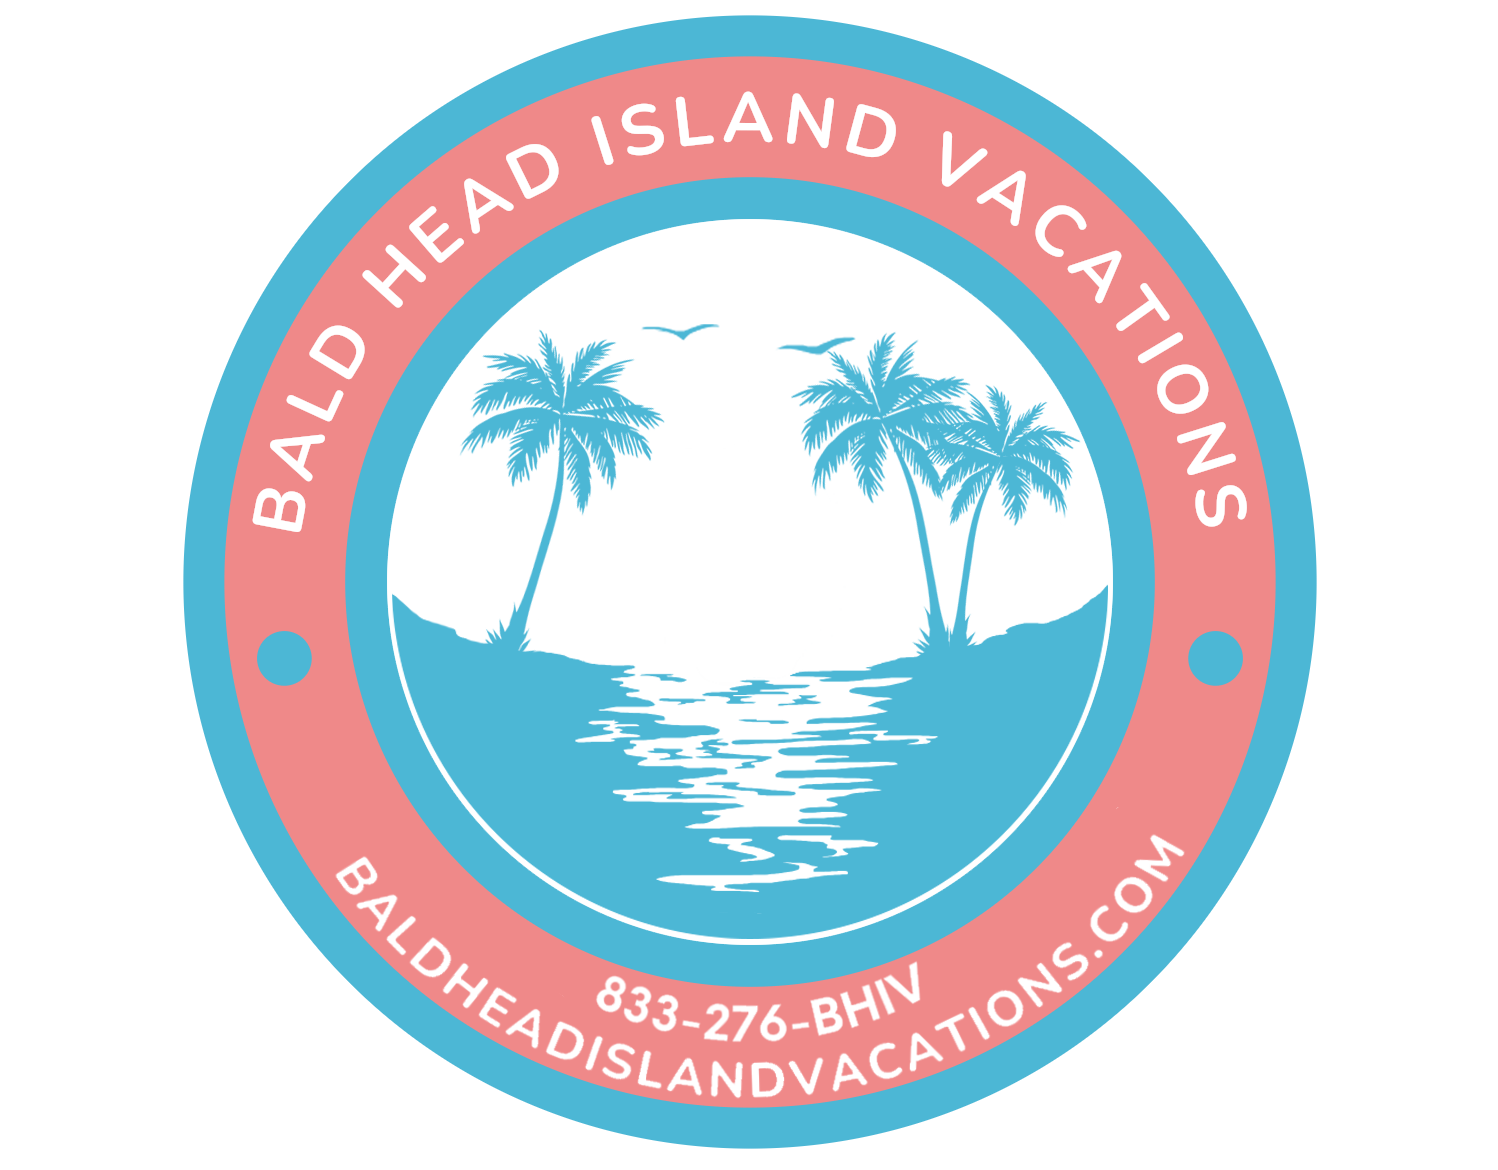 Bald Head Island Vacations